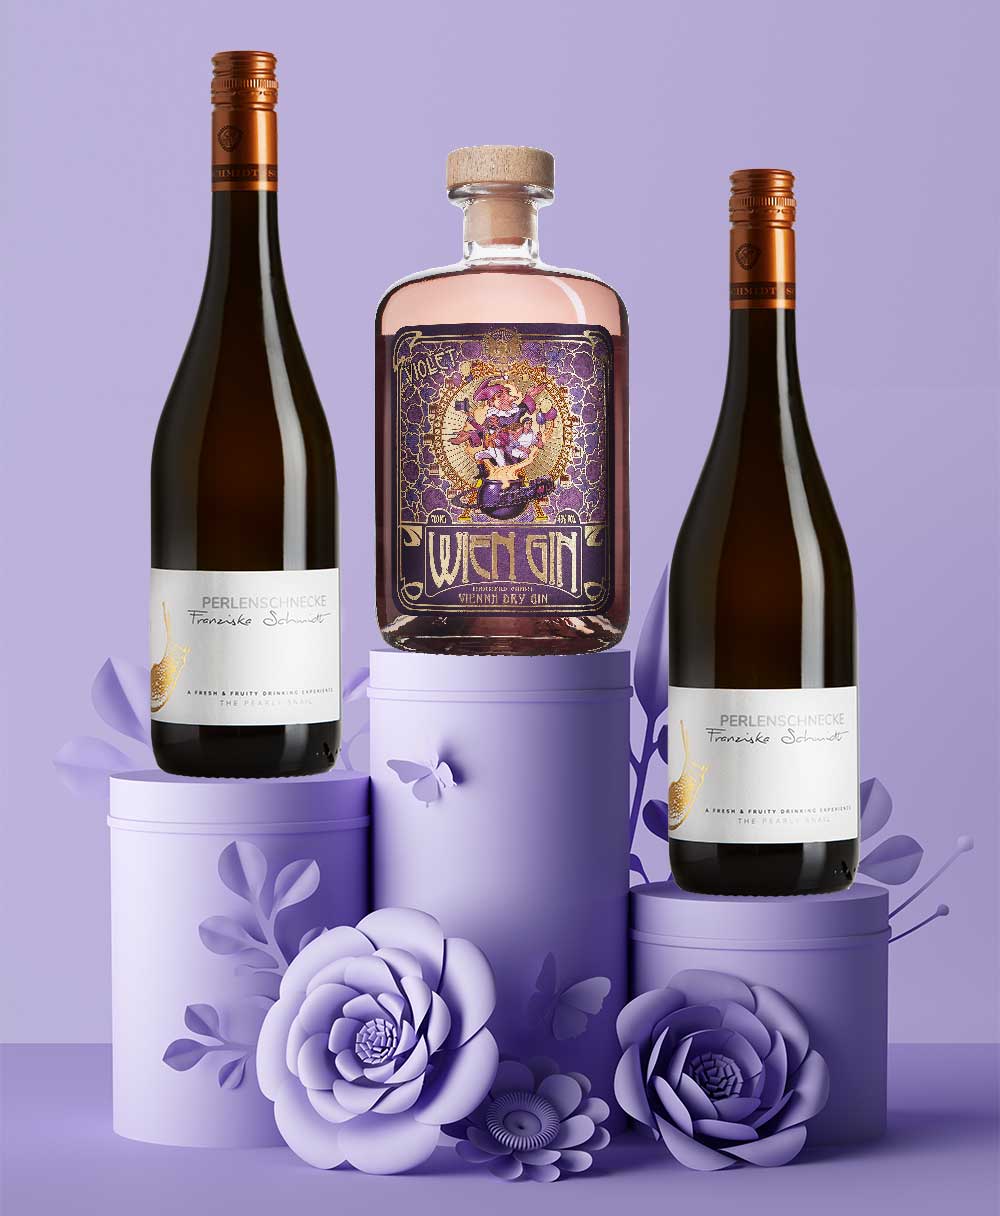 Valentinstag Special: WienGin Violet + 2 Flaschen Perlenschnecke